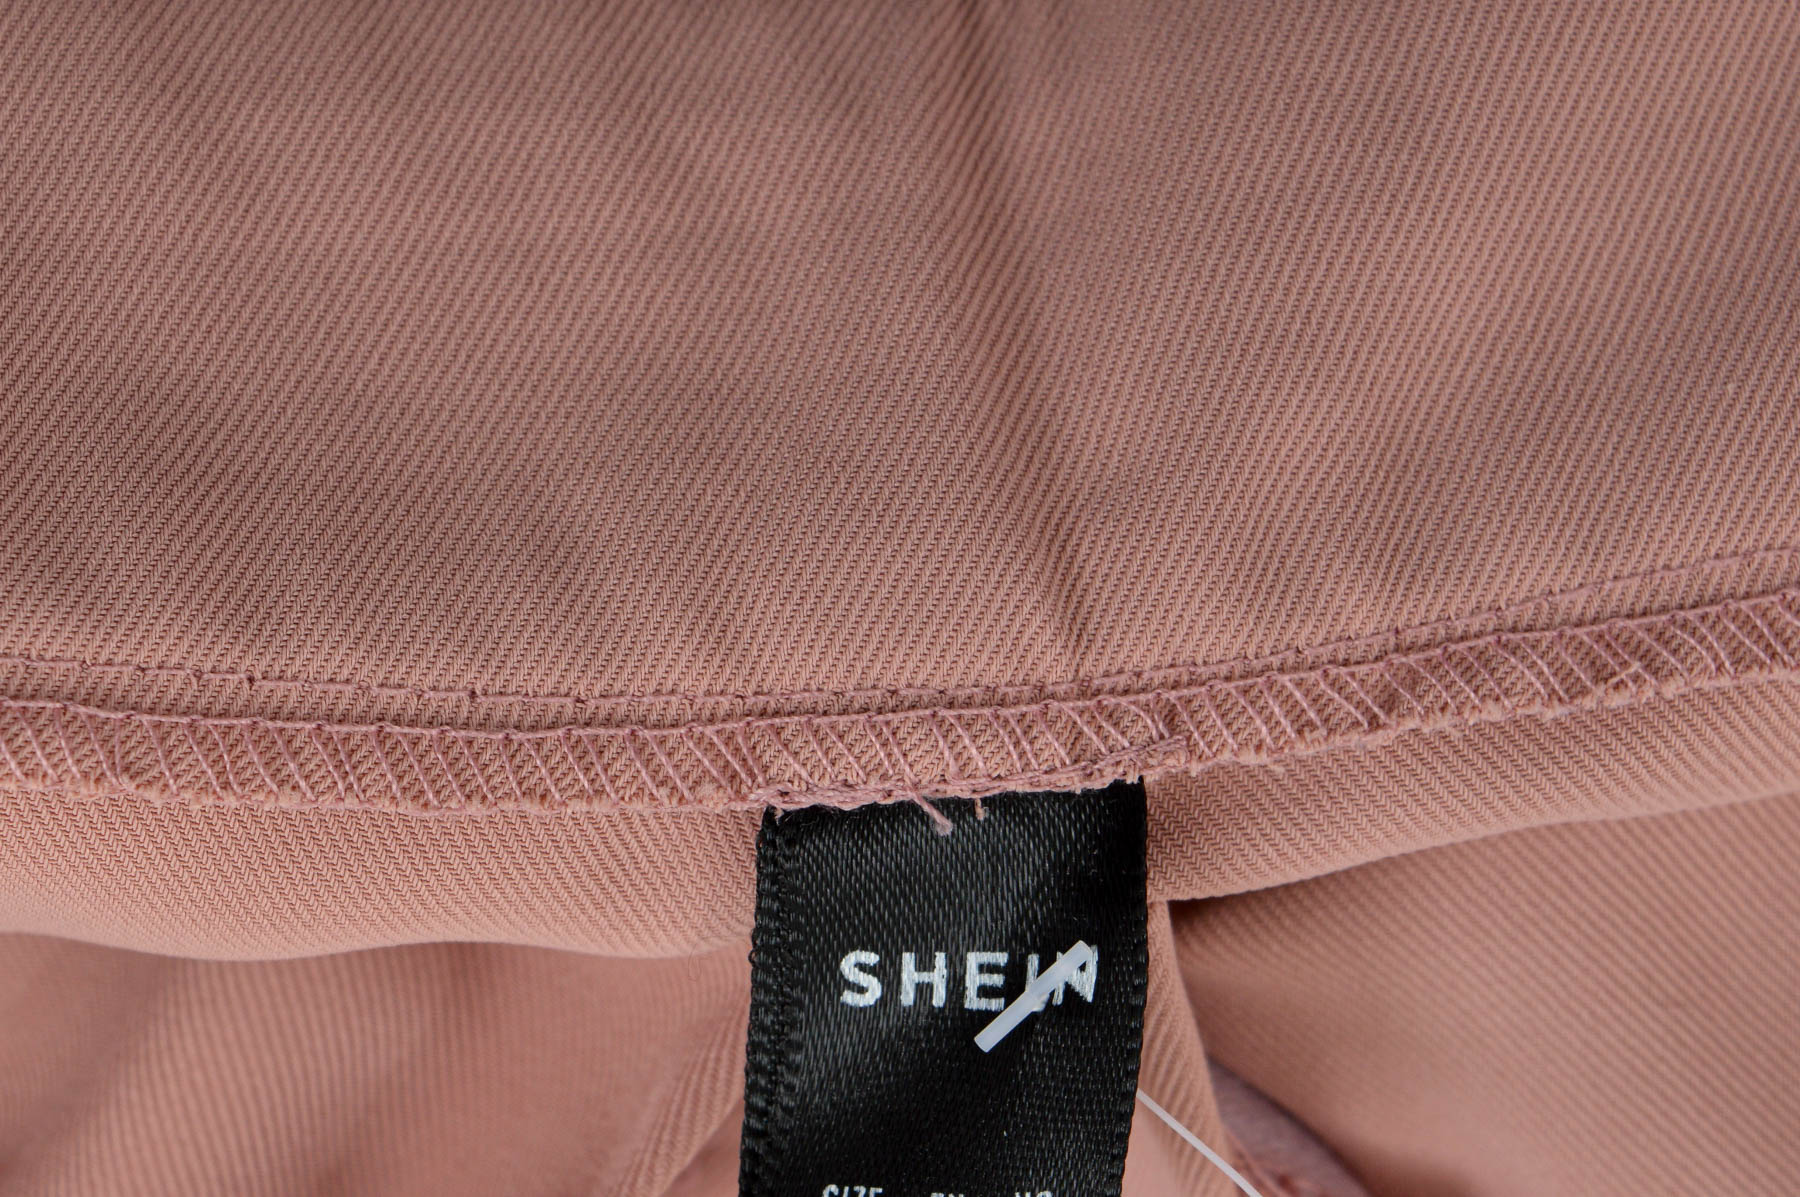 Women's trousers - SHEIN - 2